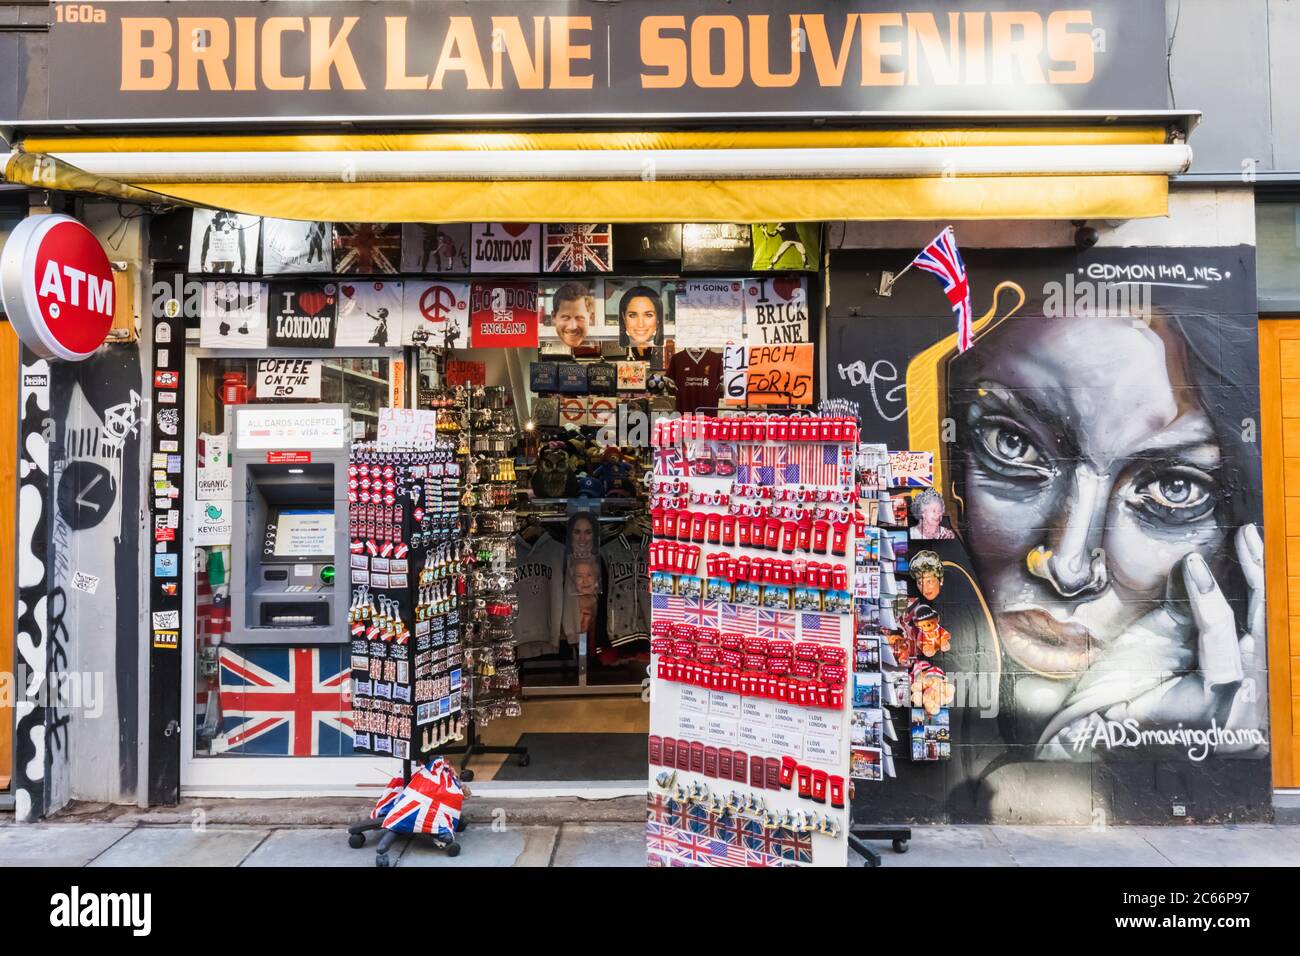 L'Angleterre, Londres, Shorditch, Brick Lane, magasin de souvenirs Banque D'Images